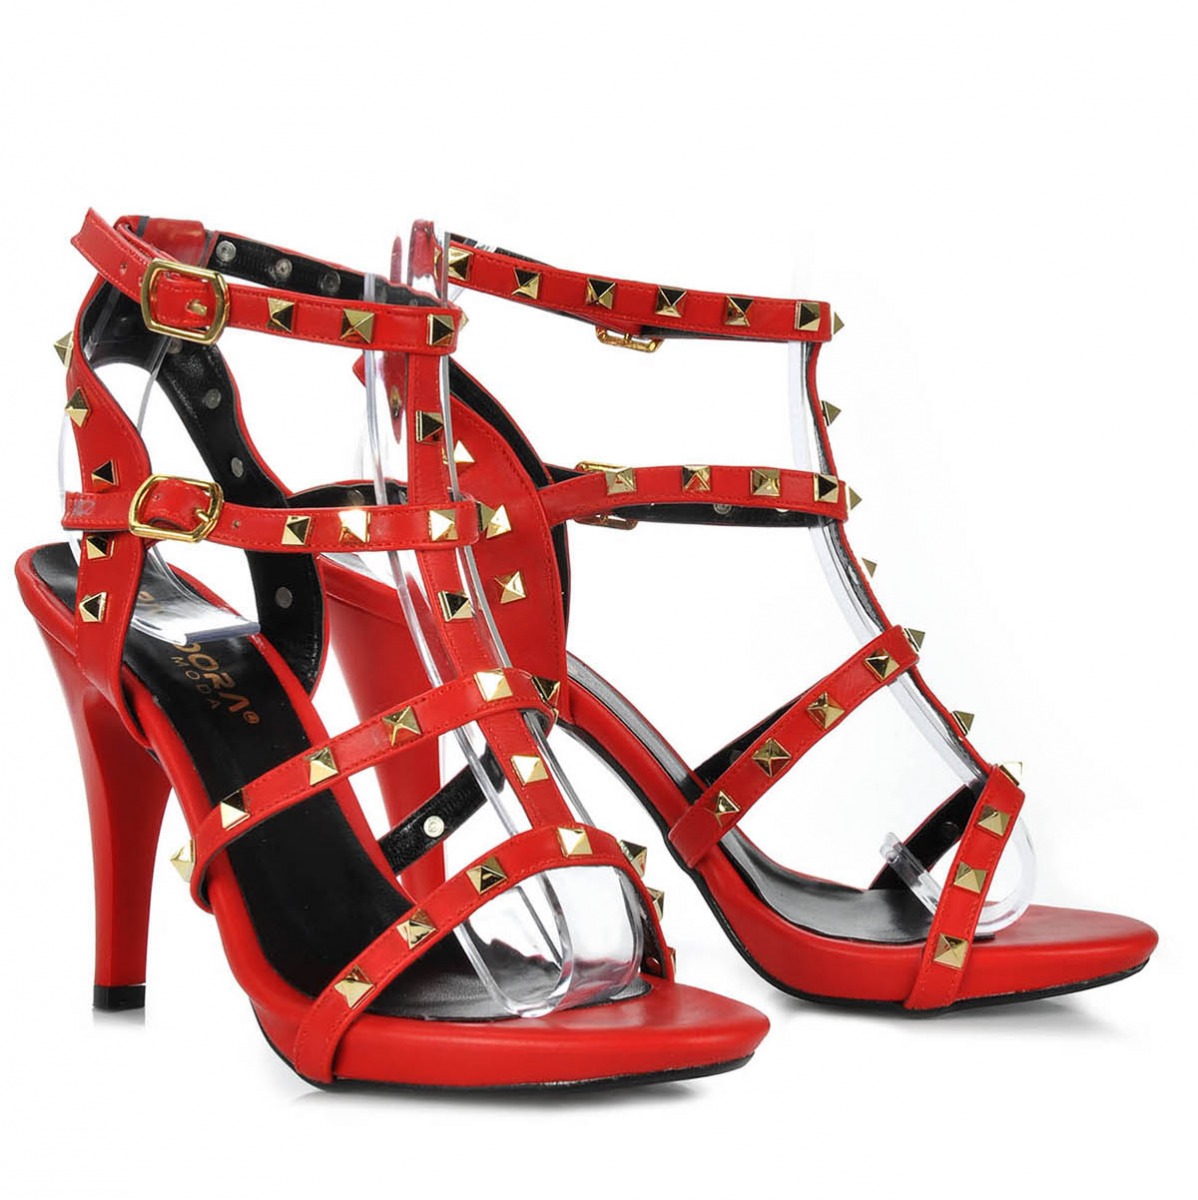 Flo Kadın  Kırmızı Klasik Topuklu Ayakkabı VZN-281Y. 4